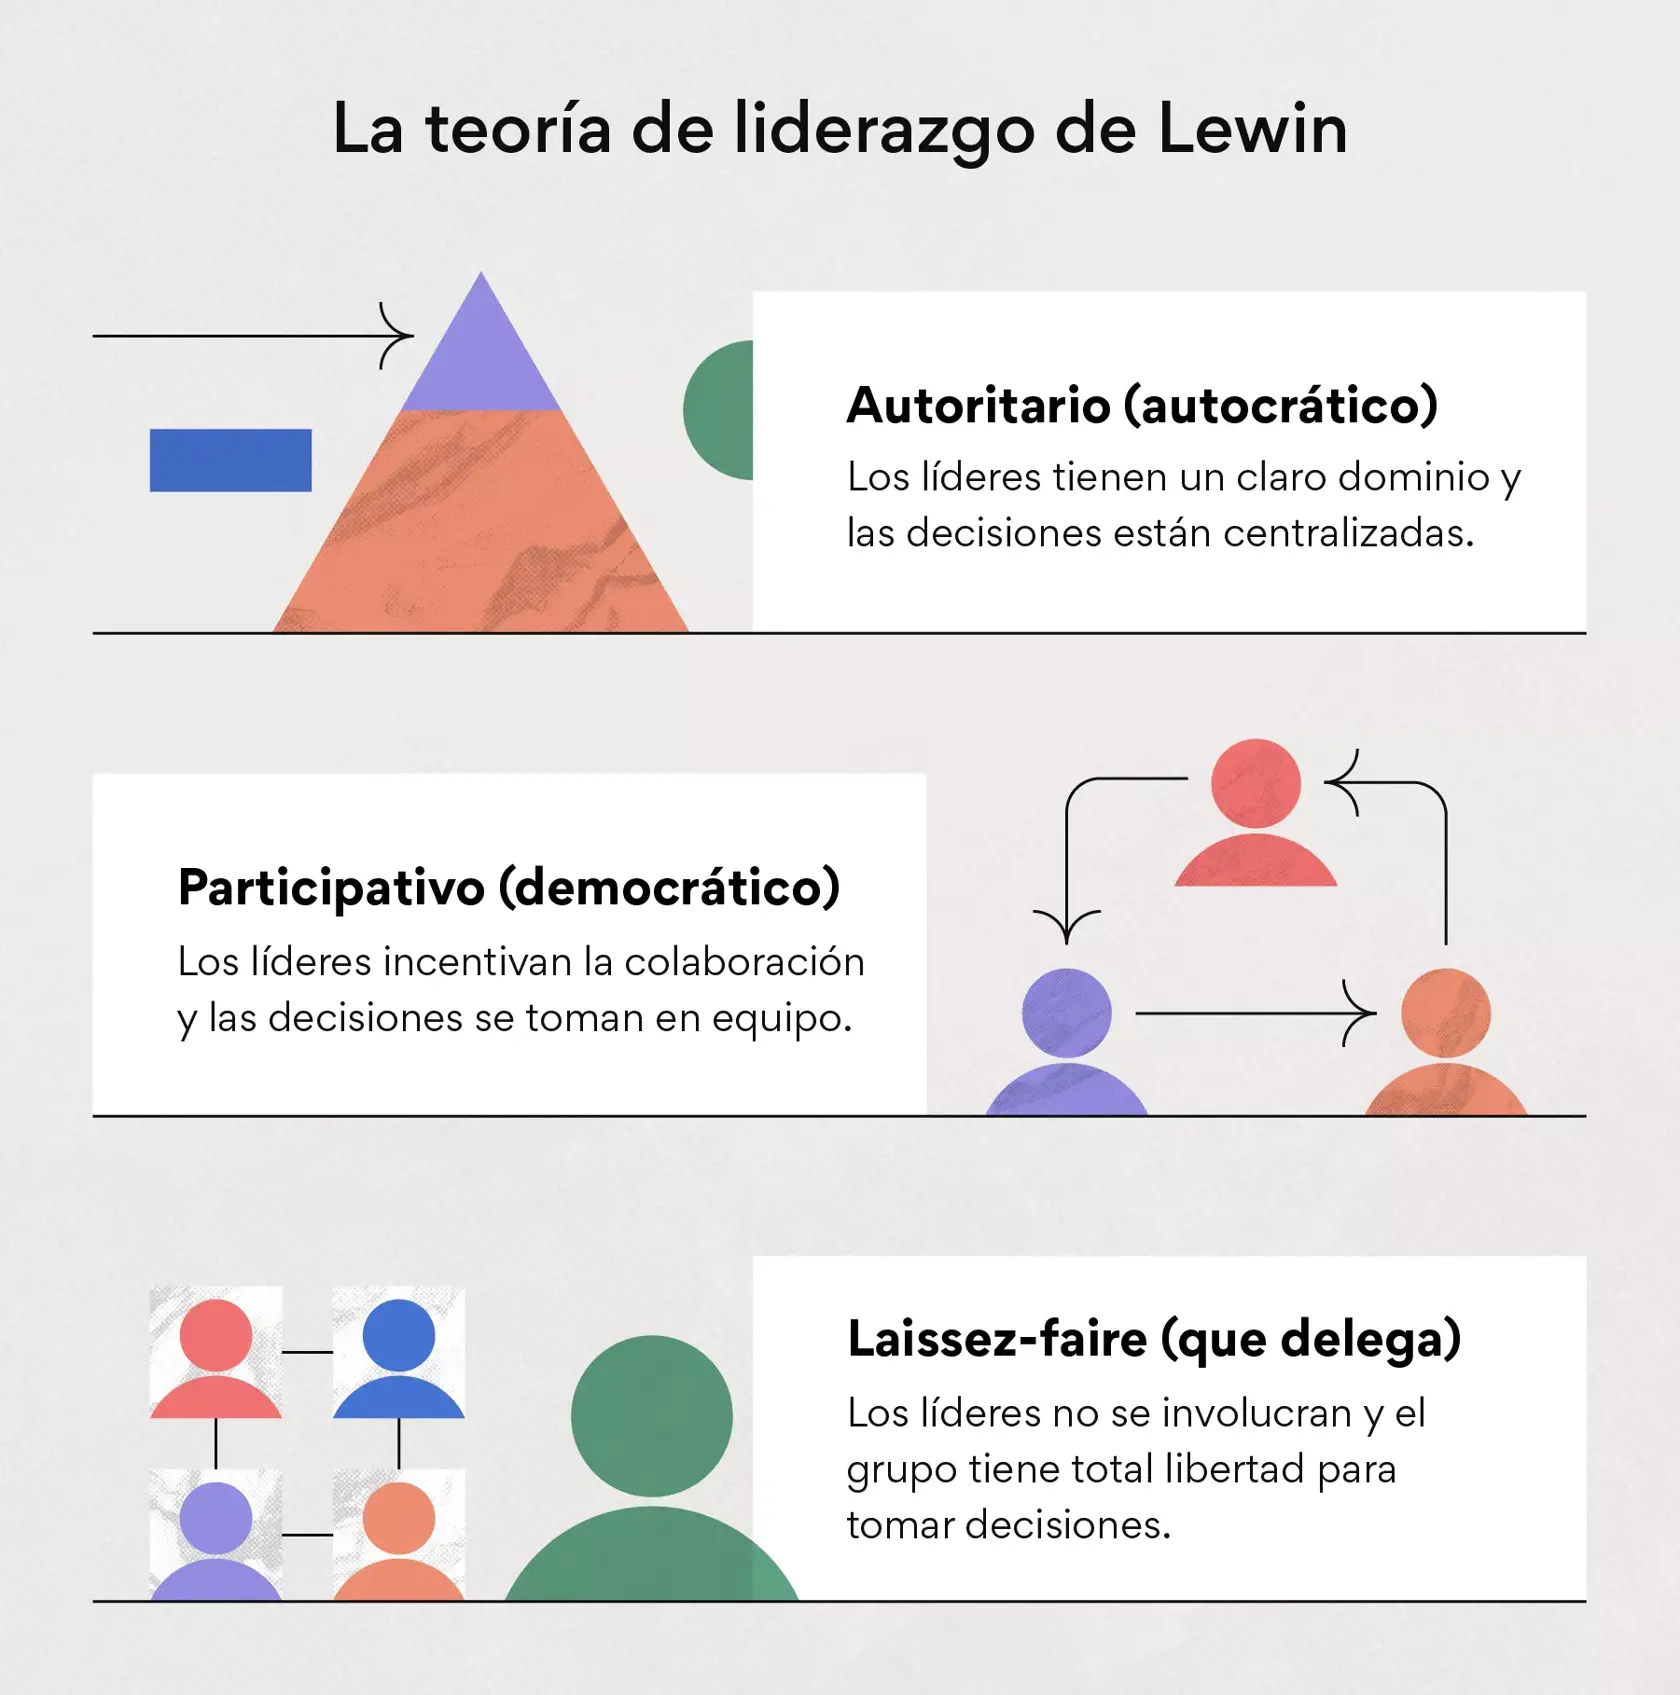 La teoría de liderazgo de Lewin